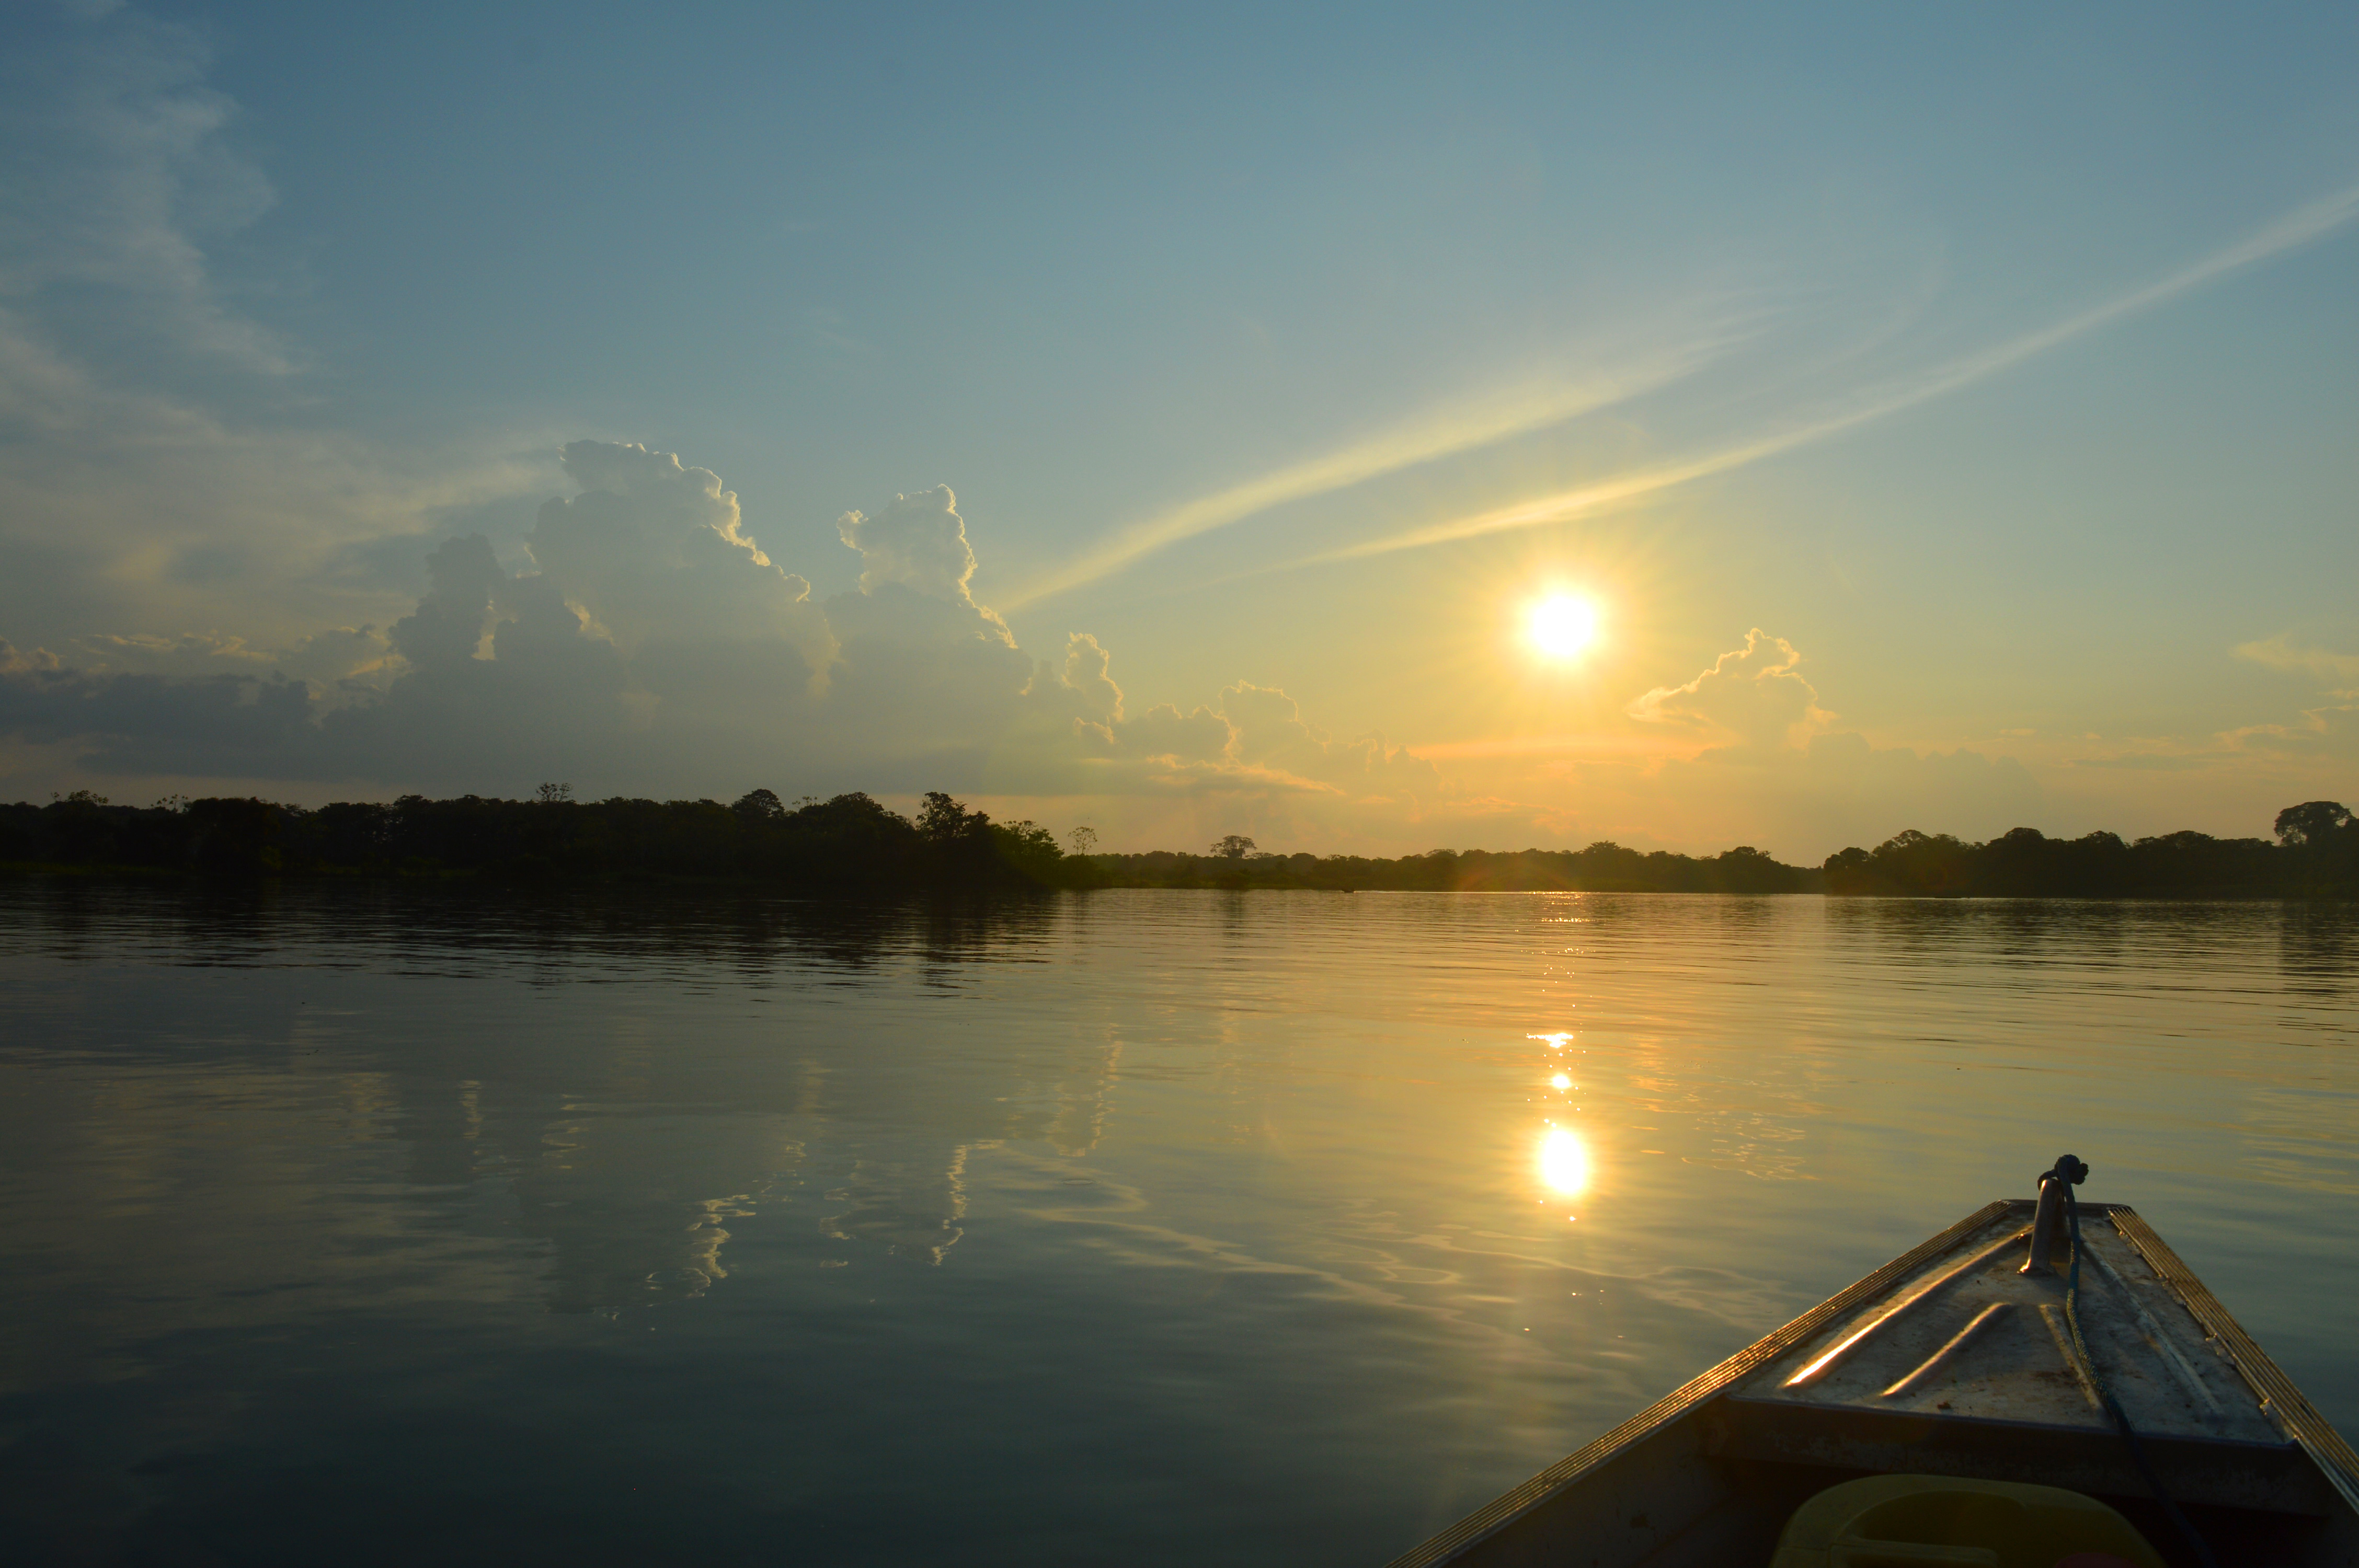 Soleil couchant au dessus de l'horizon, se reflétant sur l'Amazone, avec la pointe de la barque dépassant du bas de la photo